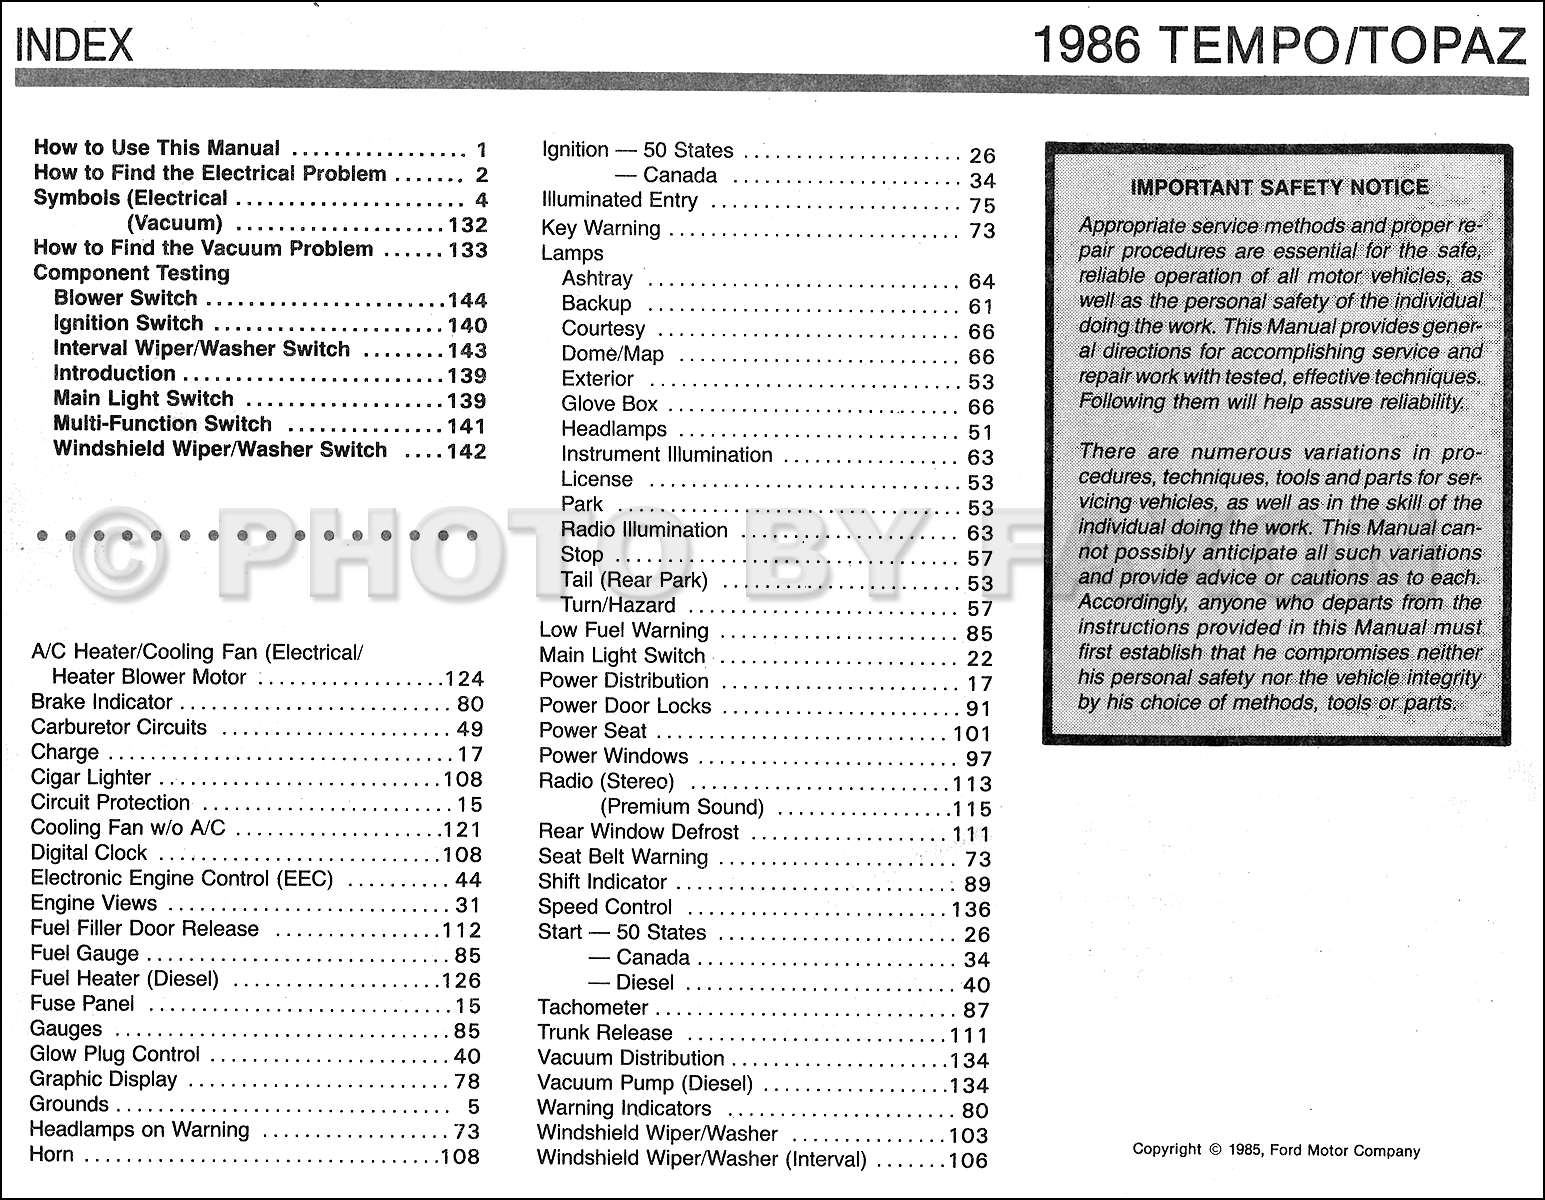 1985 Ford Tempo Mercury Topaz Vacuum Diagram Brakes Cruise Control 2.0L Diesel